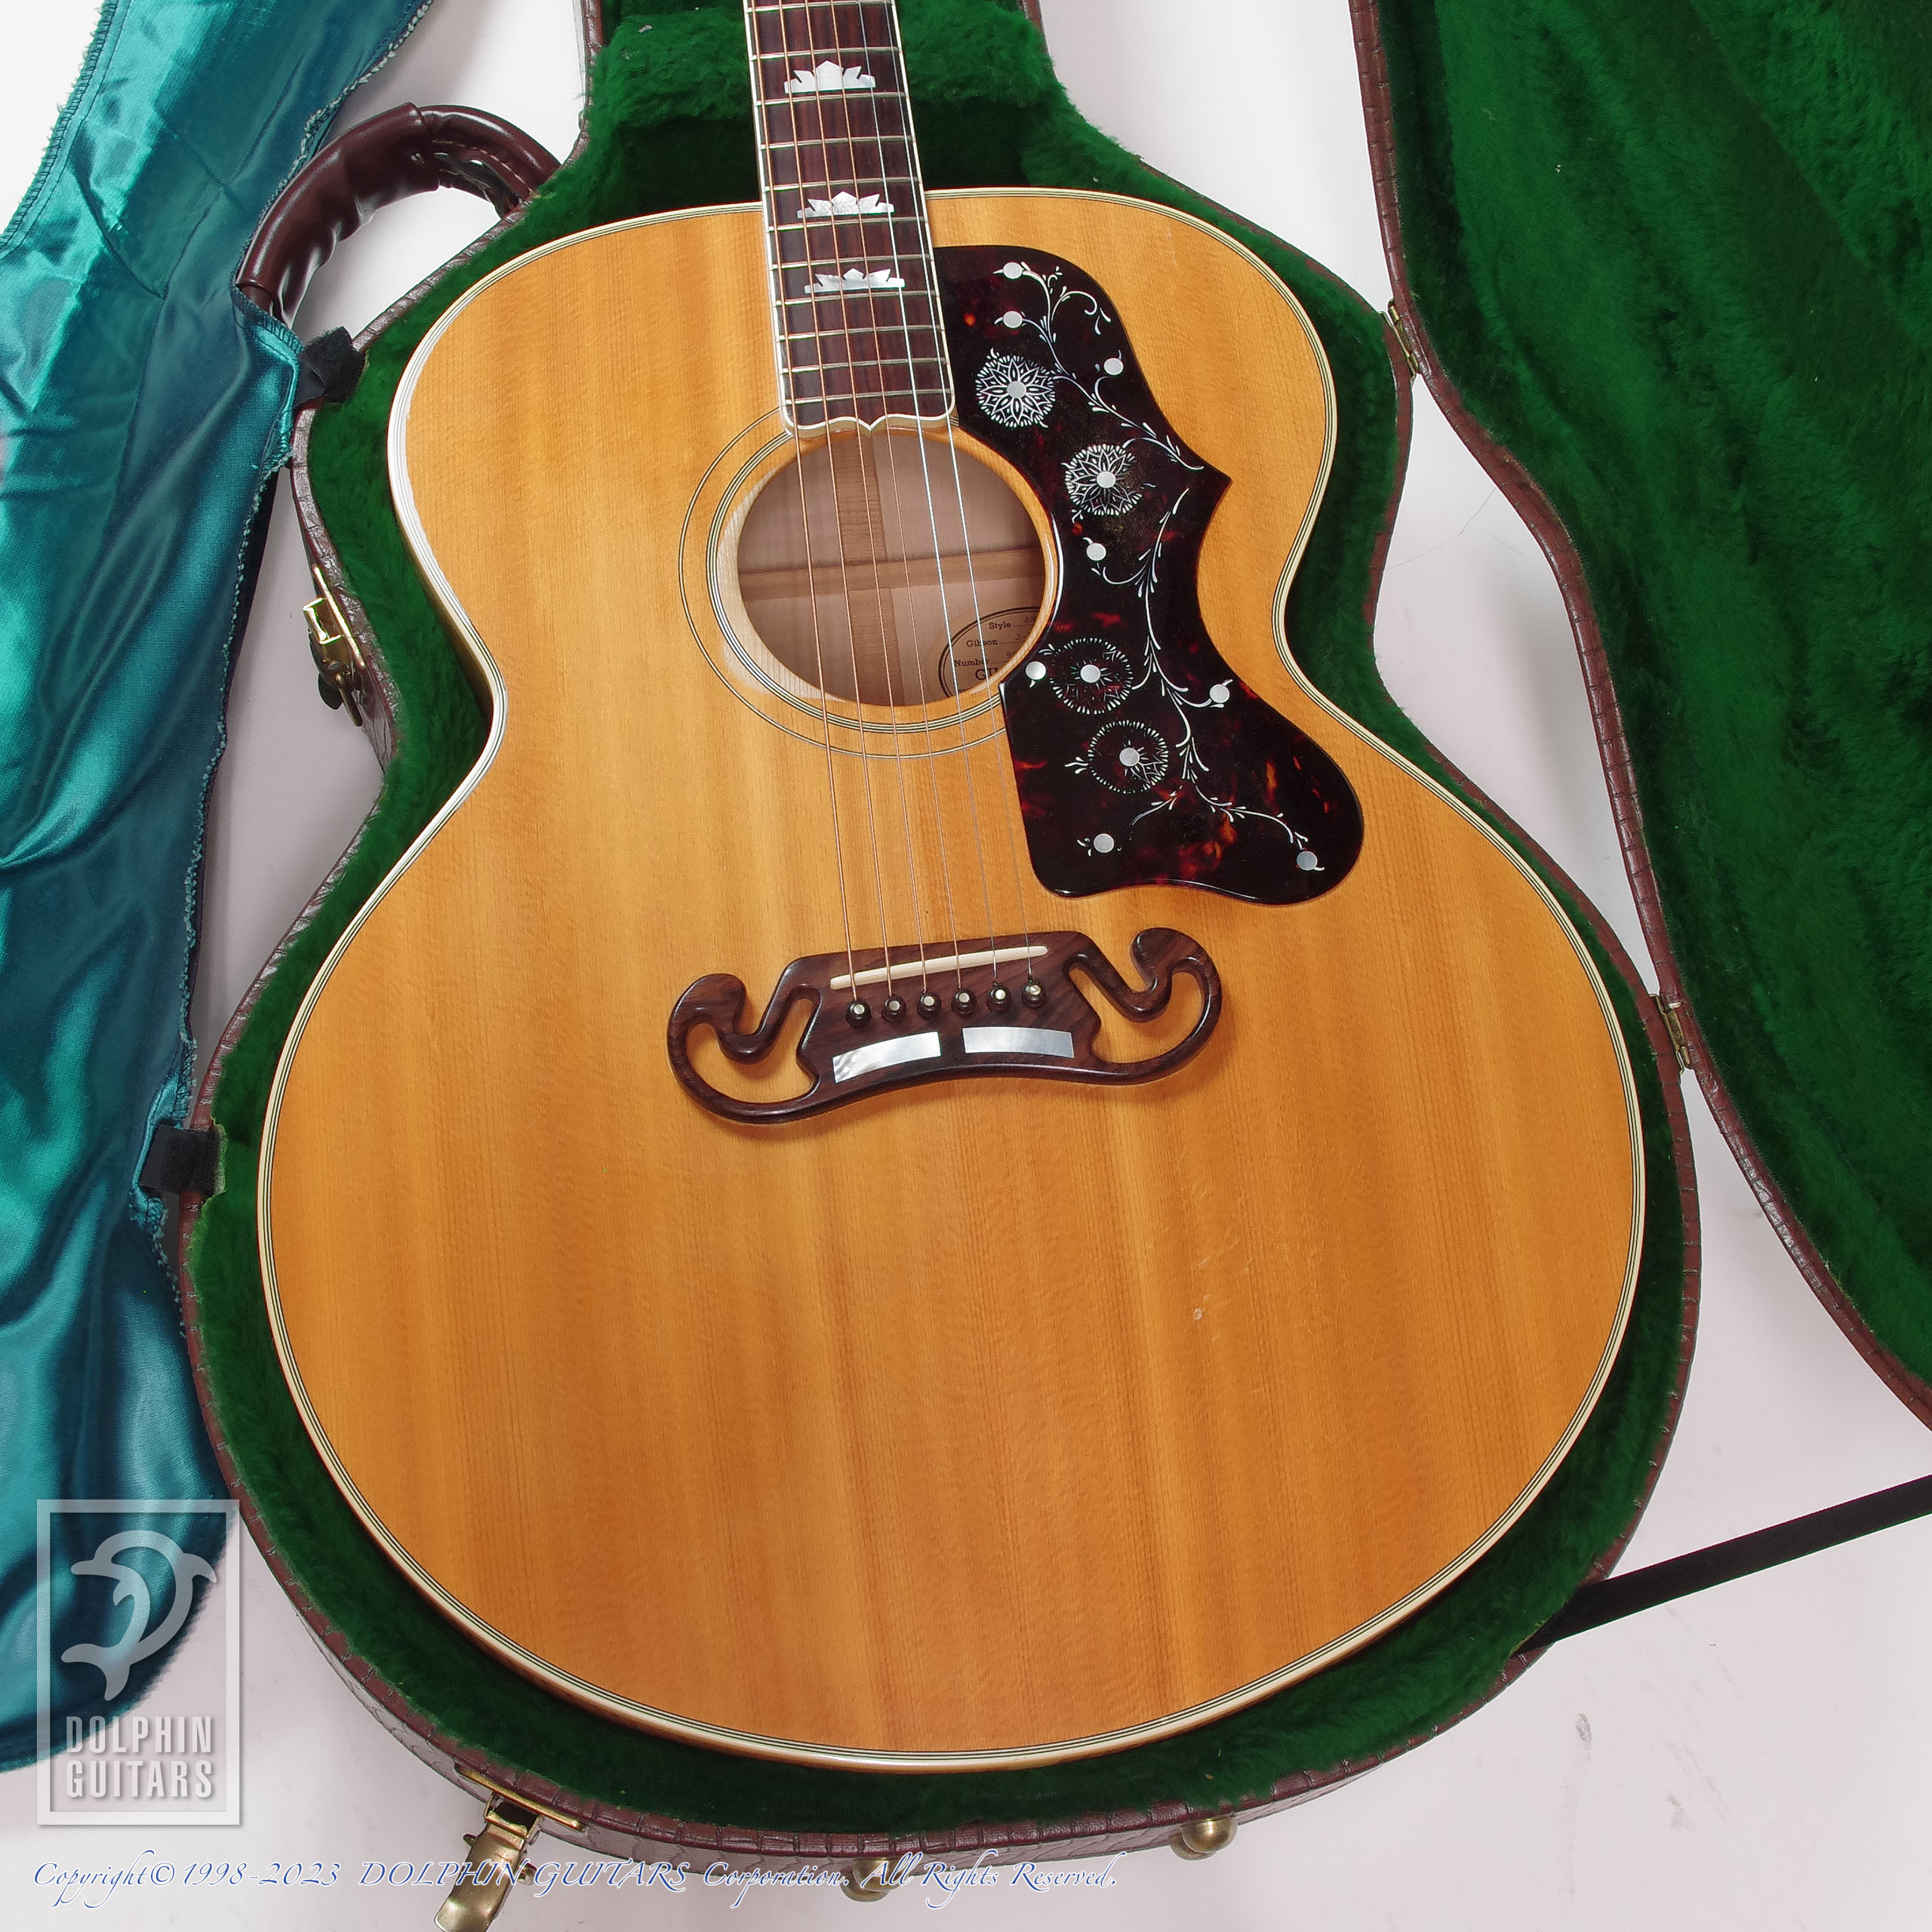 Gibson J-200 (Natural)|ドルフィンギターズ